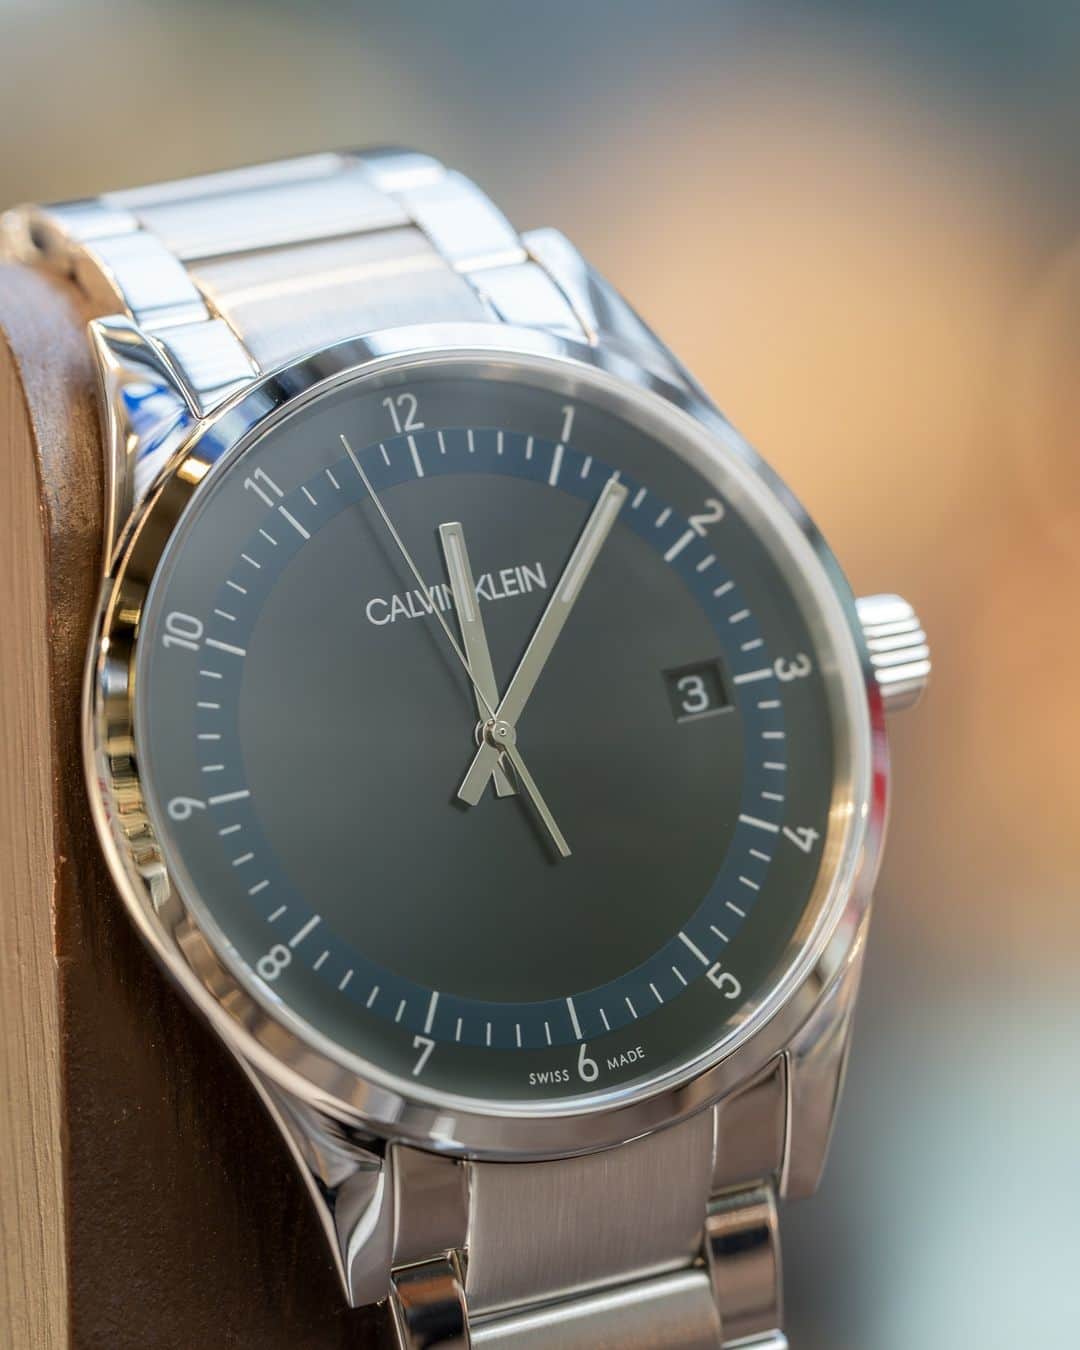 時計倉庫TOKIA 公式アカウントのインスタグラム：「⌚️ 【商品紹介】 Calvin Klein 品番: KAM21141  今回はCalvin Kleinのお時計をご紹介します！  黒でまとめられた文字盤にサークル状に控えめなネイビーでインデックスを飾っているのがおしゃれな1本です。針とカレンダー、インデックスの文字は白なので視認性もよく使いやすさも兼ね備えています！スーツスタイルにもぴったりで普段使いできます！  大きさや実際の色味など、ぜひ店頭でお試しください！スタッフ一同、心よりお待ちしております🙇‍♀️  ……………………………………………………….................  ☟オンラインショップはプロフィールURLから☟ @tokia_official  ……………………………………………………….................  #時計倉庫 #時計倉庫tokia #腕時計 #watch #手表 #腕元倶楽部 #腕時計好きな人と繋がりたい #ck #ckwatch #calvinklein #calvinkleinwatch #カルバンクライン #カルバンクライン時計」